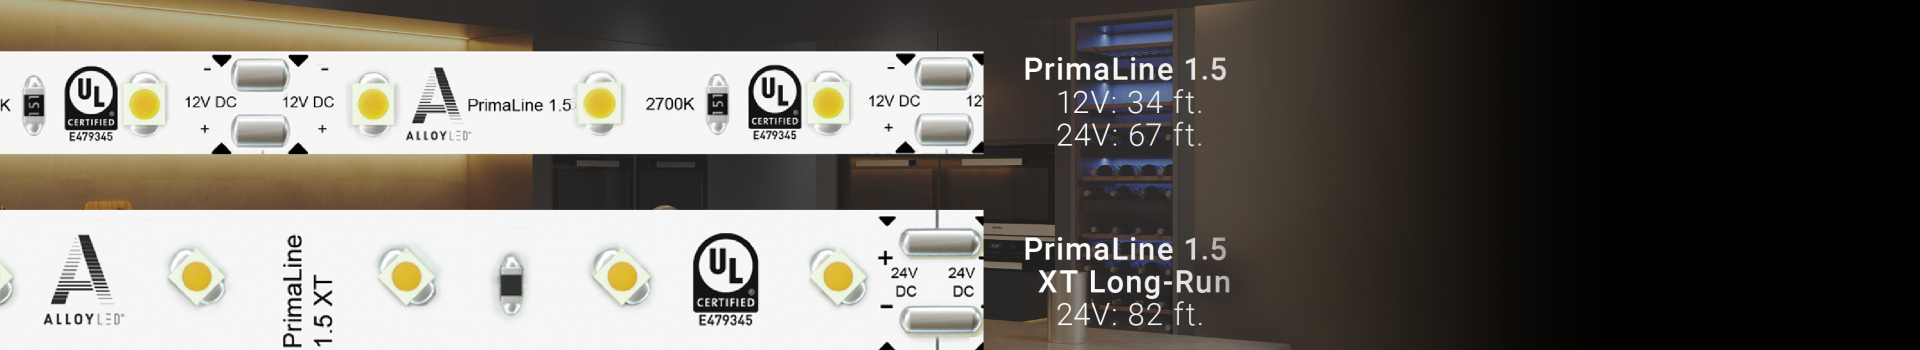 New Alloy LED Technology Allows for Longer Maximum Runs on PrimaLine LED Tape Light Family